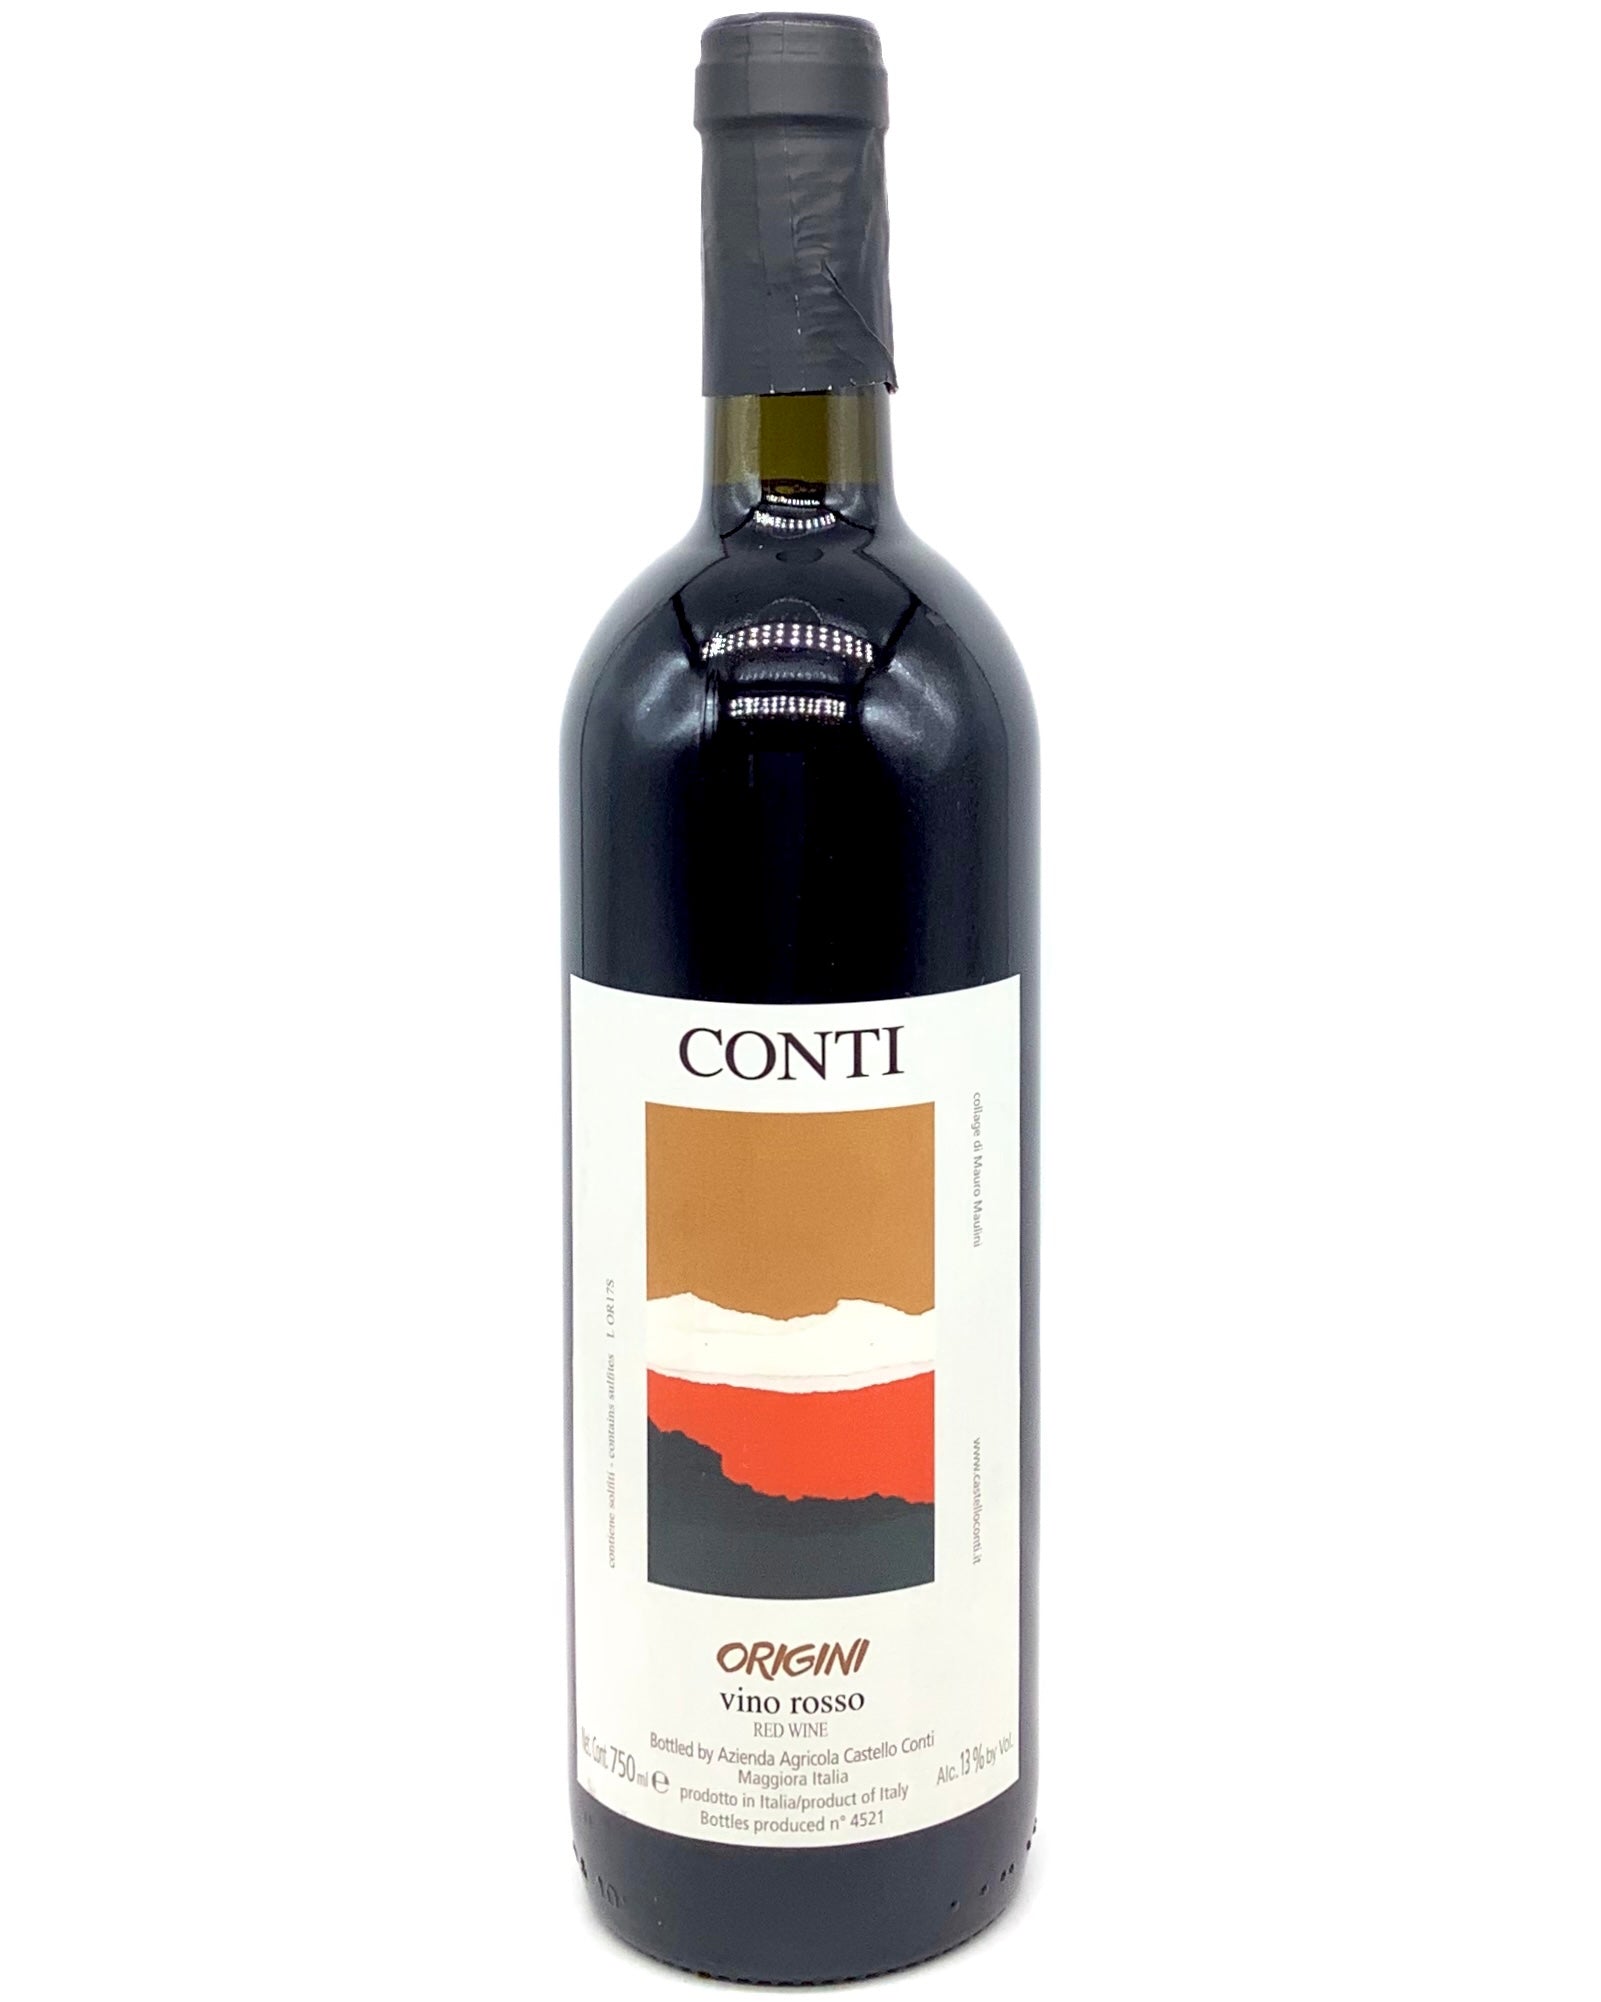 Castello Conti "Origini" Vino Rosso, Boca, Alto Piedmonte, Italy 2019